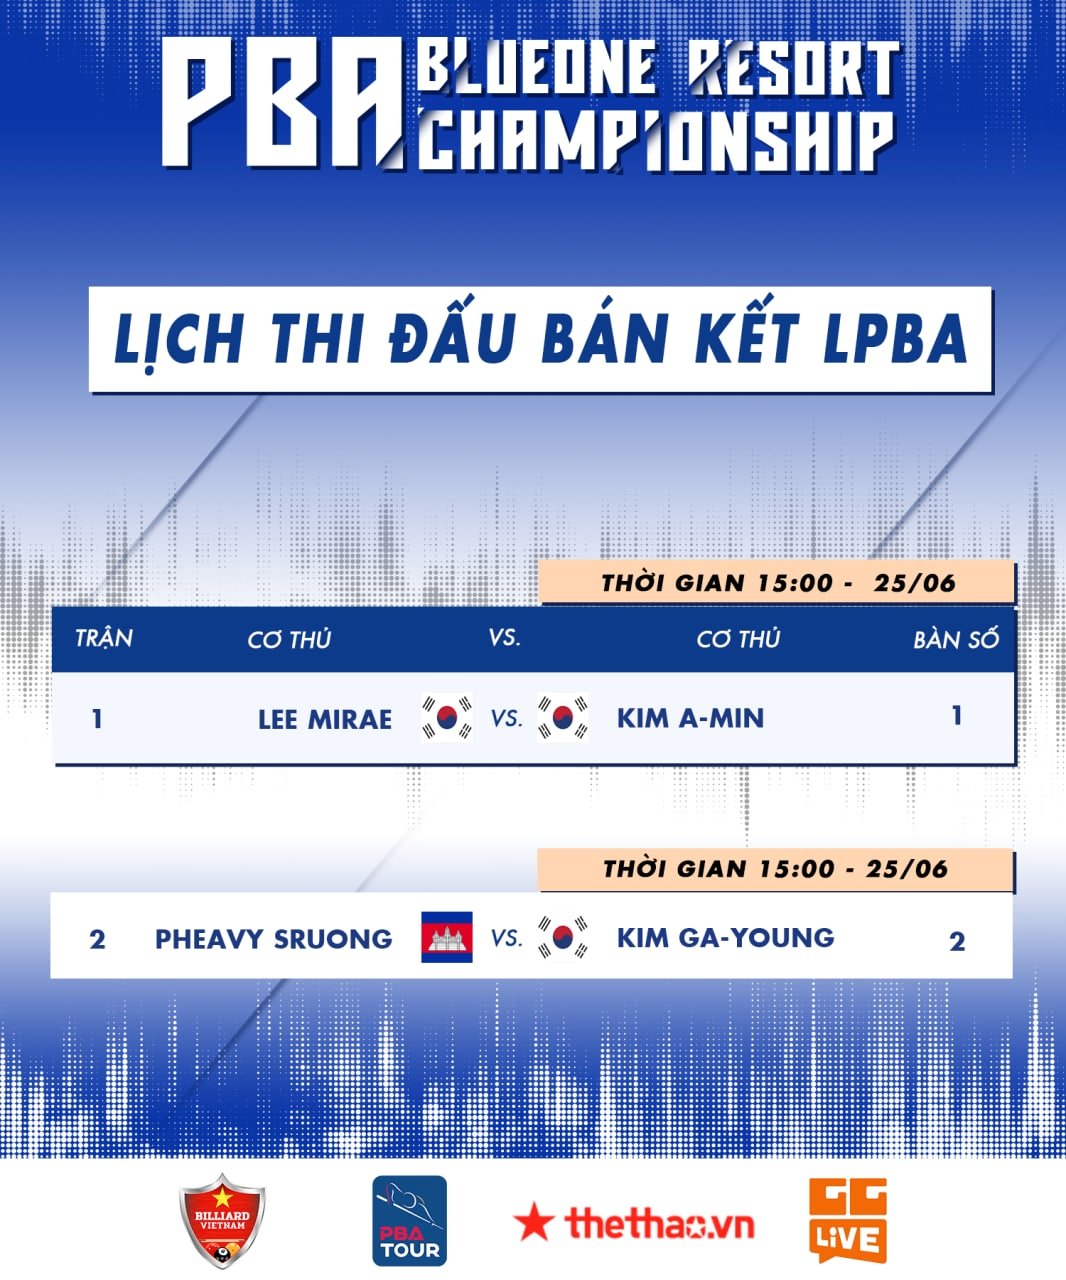 Lịch thi đấu PBA Championship 2022 ngày 25/6: Phương Linh, Minh Cẩm đánh cùng giờ - Ảnh 1